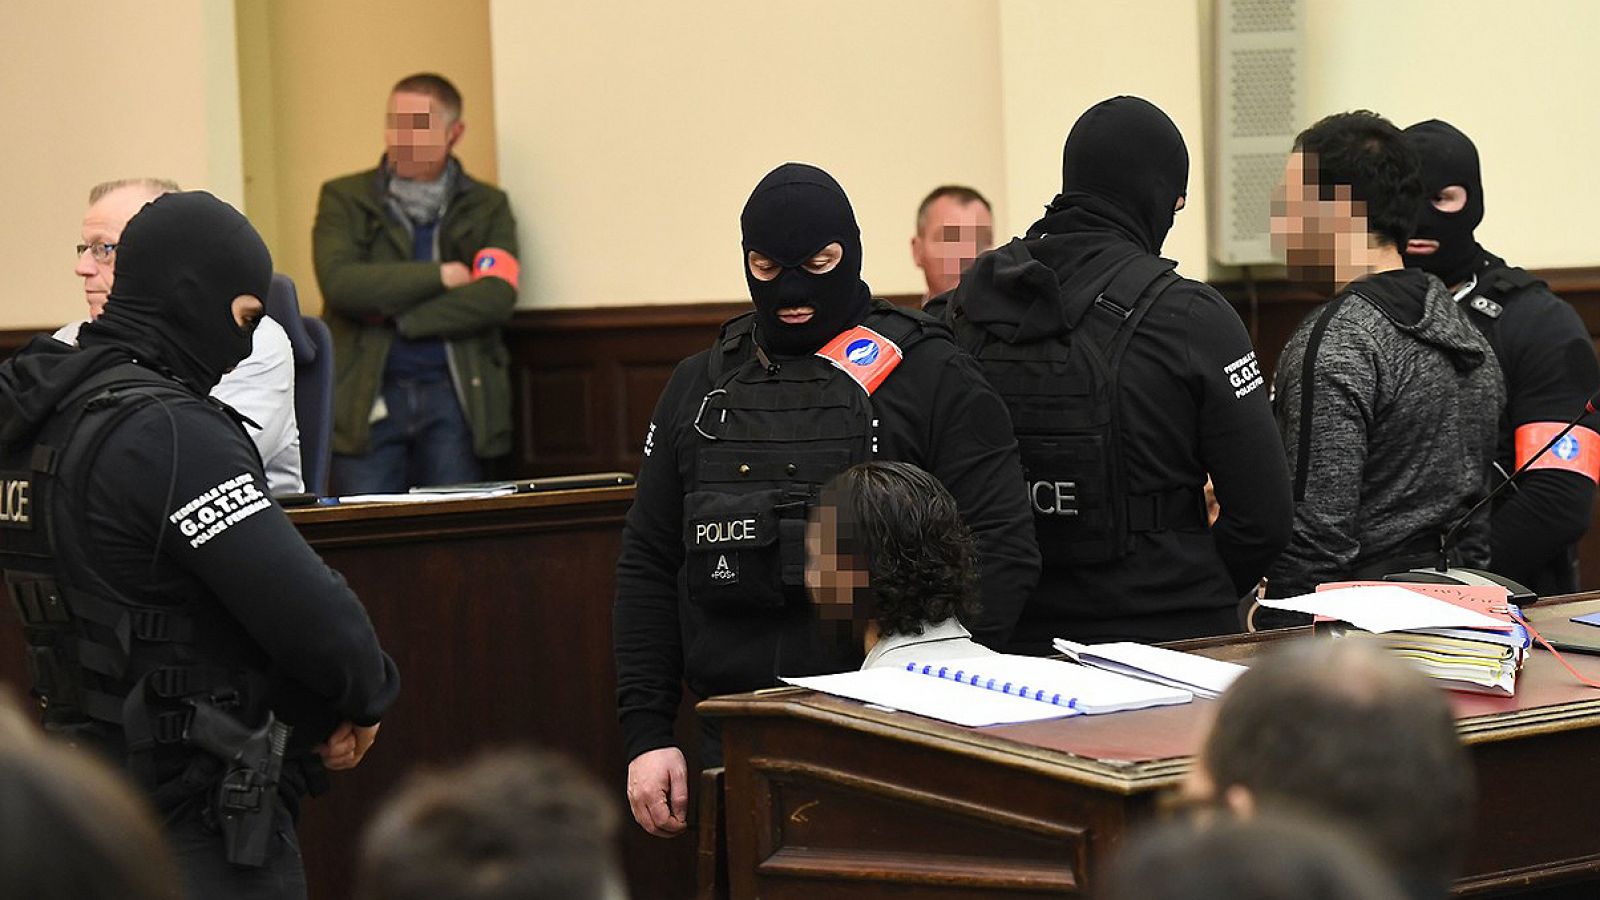 El presunto terrorista Salah Abdeslam (izquierda, sentado y con la cara difuminada) durante el primero de los juicios a los que se enfrenta, en el Palacio de Justicia de Bruselas, Bélgica. El sospechoso en pie es su presunto cómplice, Sofiane Ayari